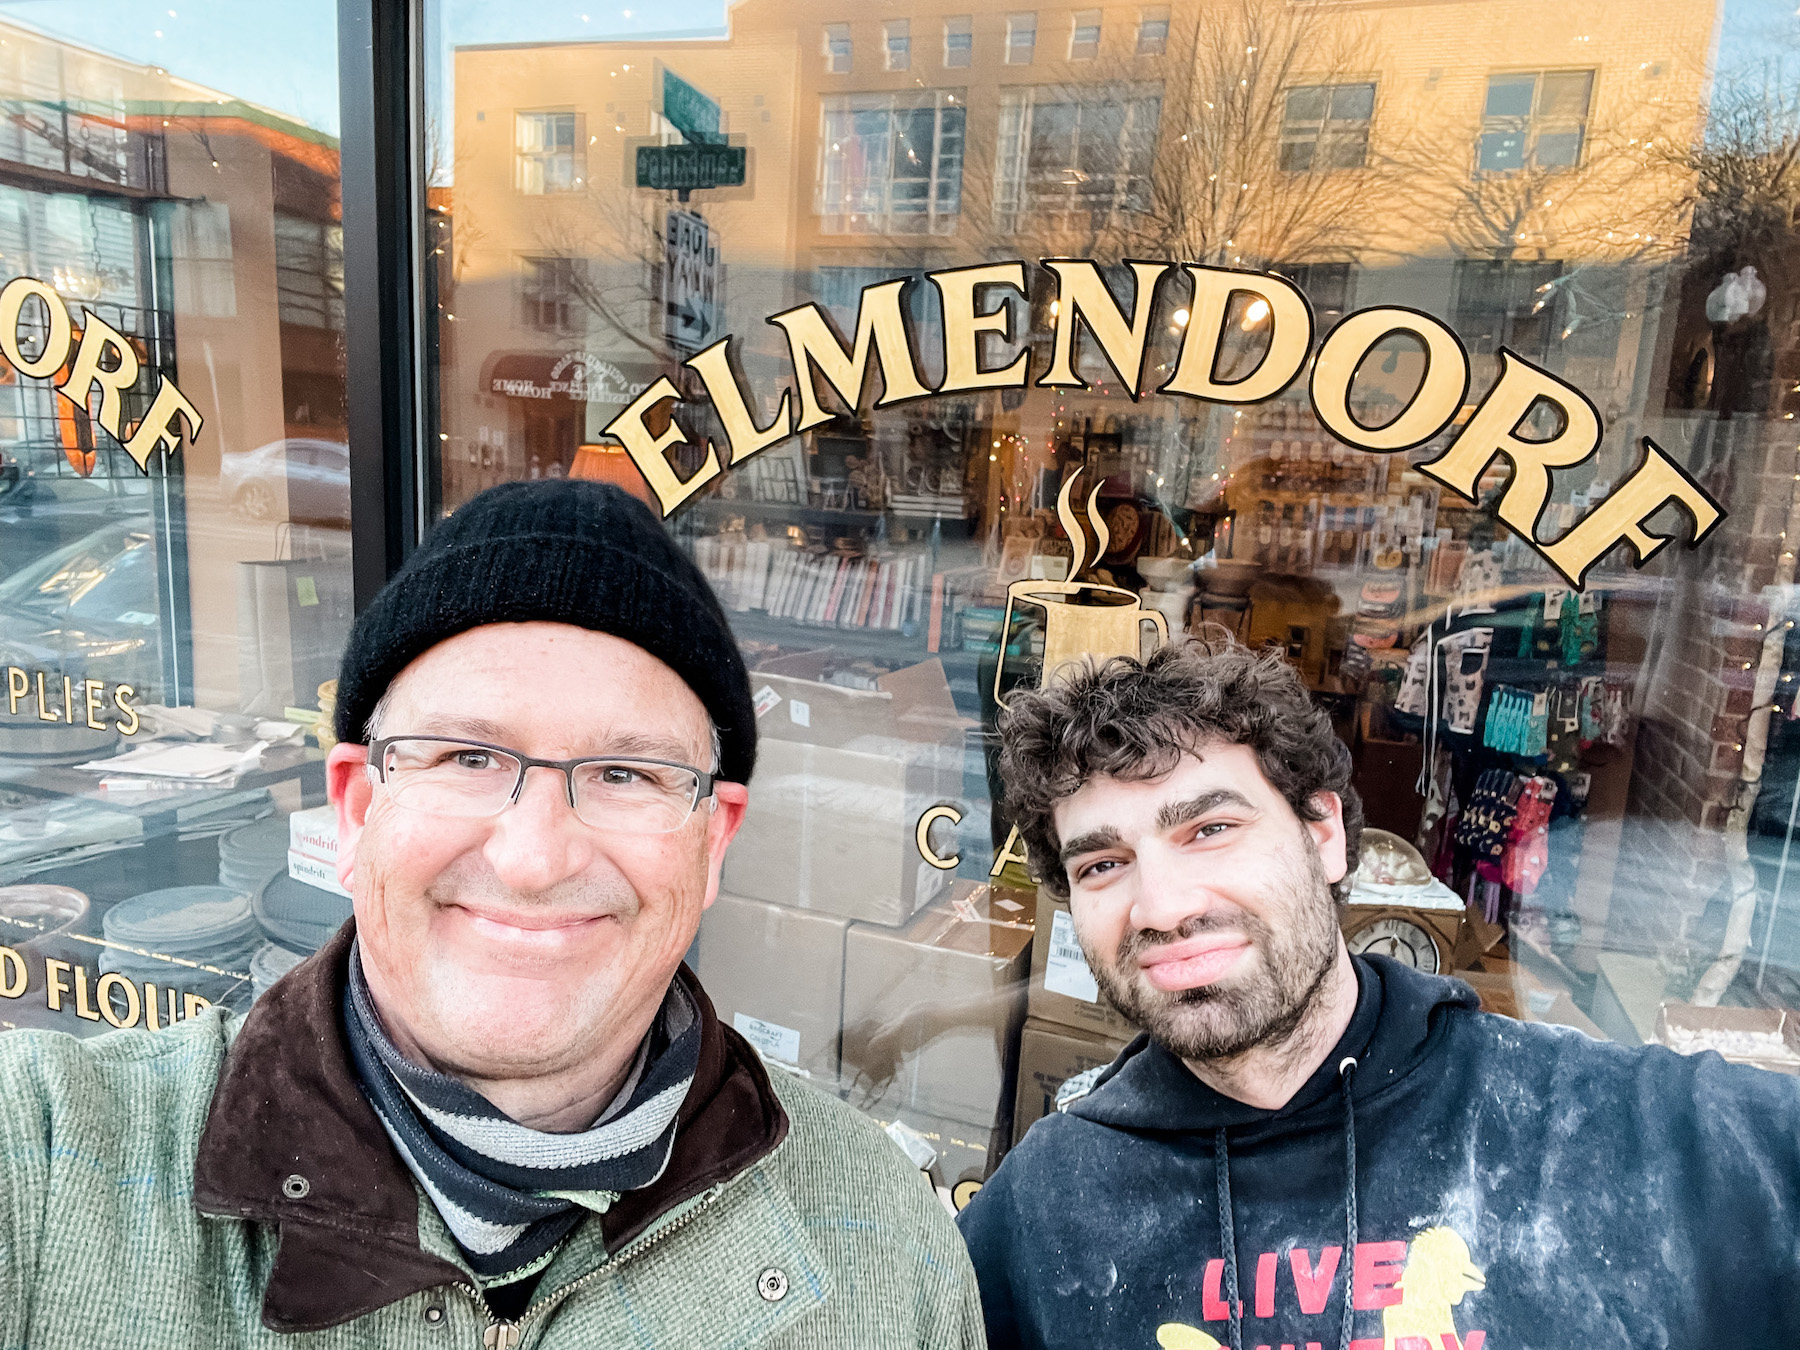 Meet me at Elmendorf